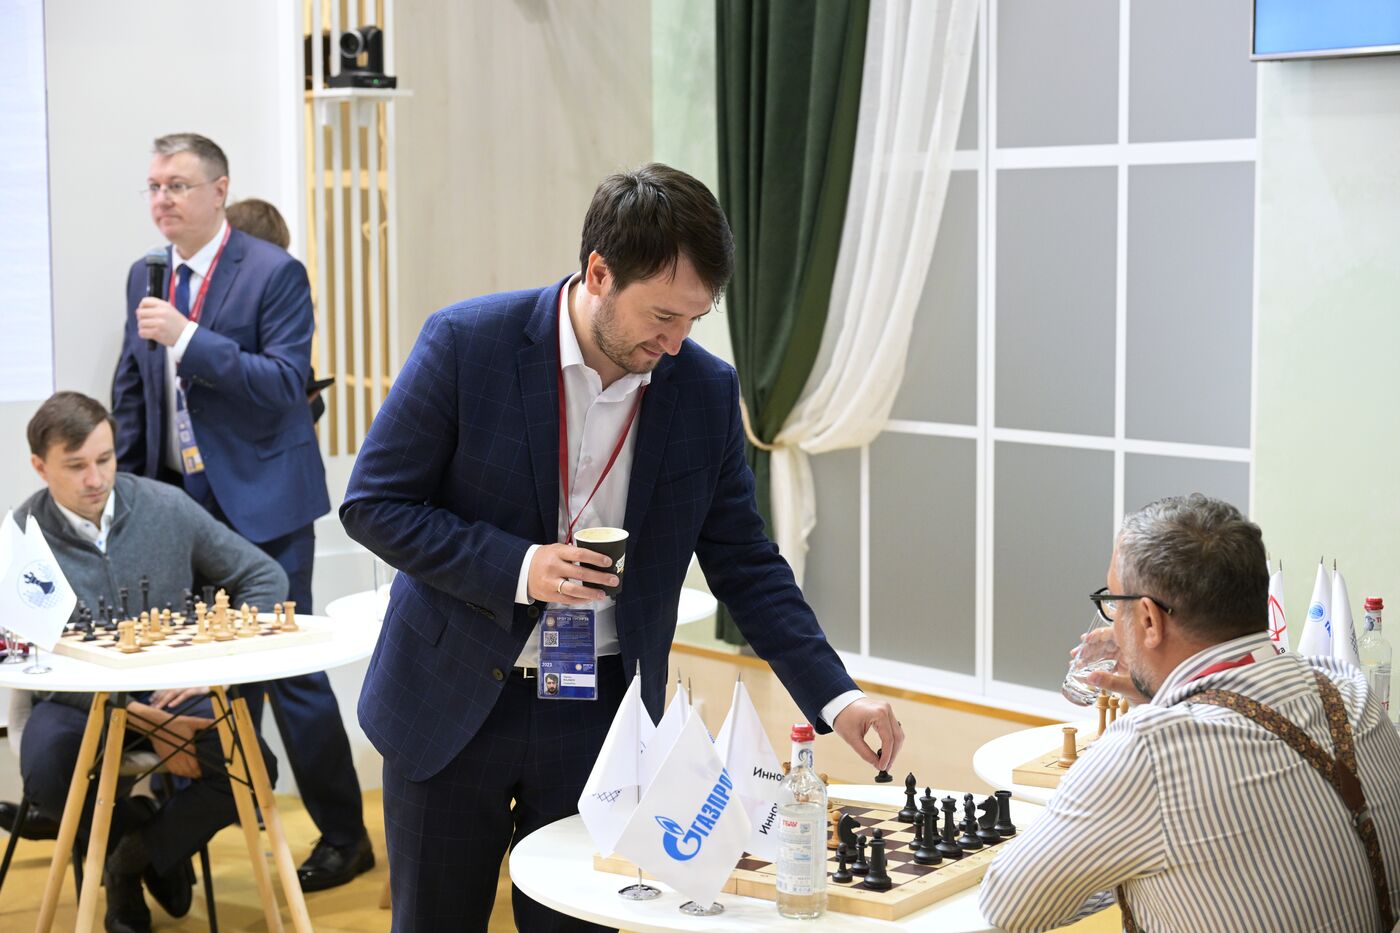 ПМЭФ-2023. Сеанс одновременной игры в шахматы с гроссмейстером с использованием искусственного интеллекта